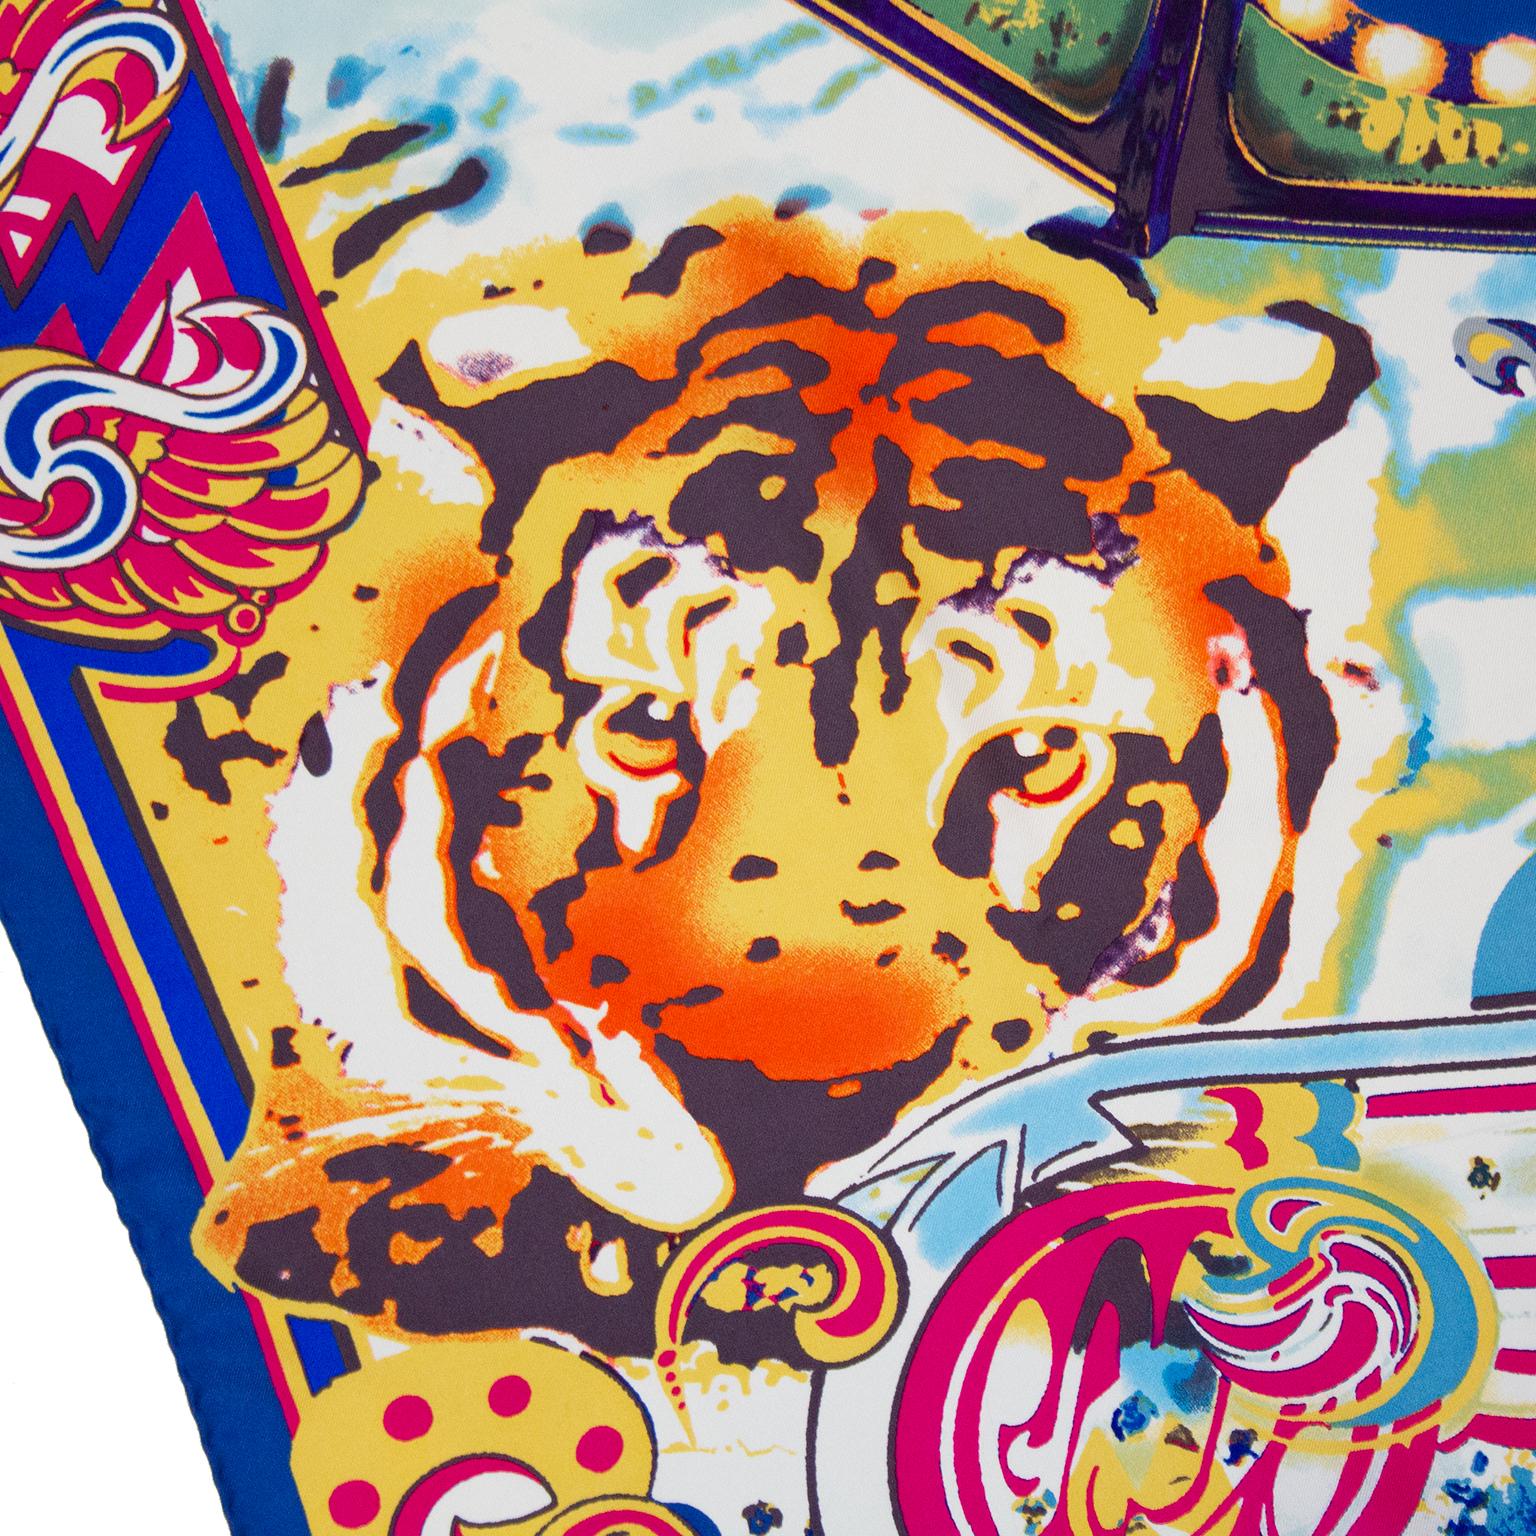 quadratischer Seidenschal von Christian Lacroix aus den 1990er Jahren. Mehrfarbiger All-Over-Zirkusdruck mit einem Tiger, einem Karussell und einer Vielzahl von traditionellen Zirkus-Werbebildern. Christian Lacroix-Markenzeichen in der rechten